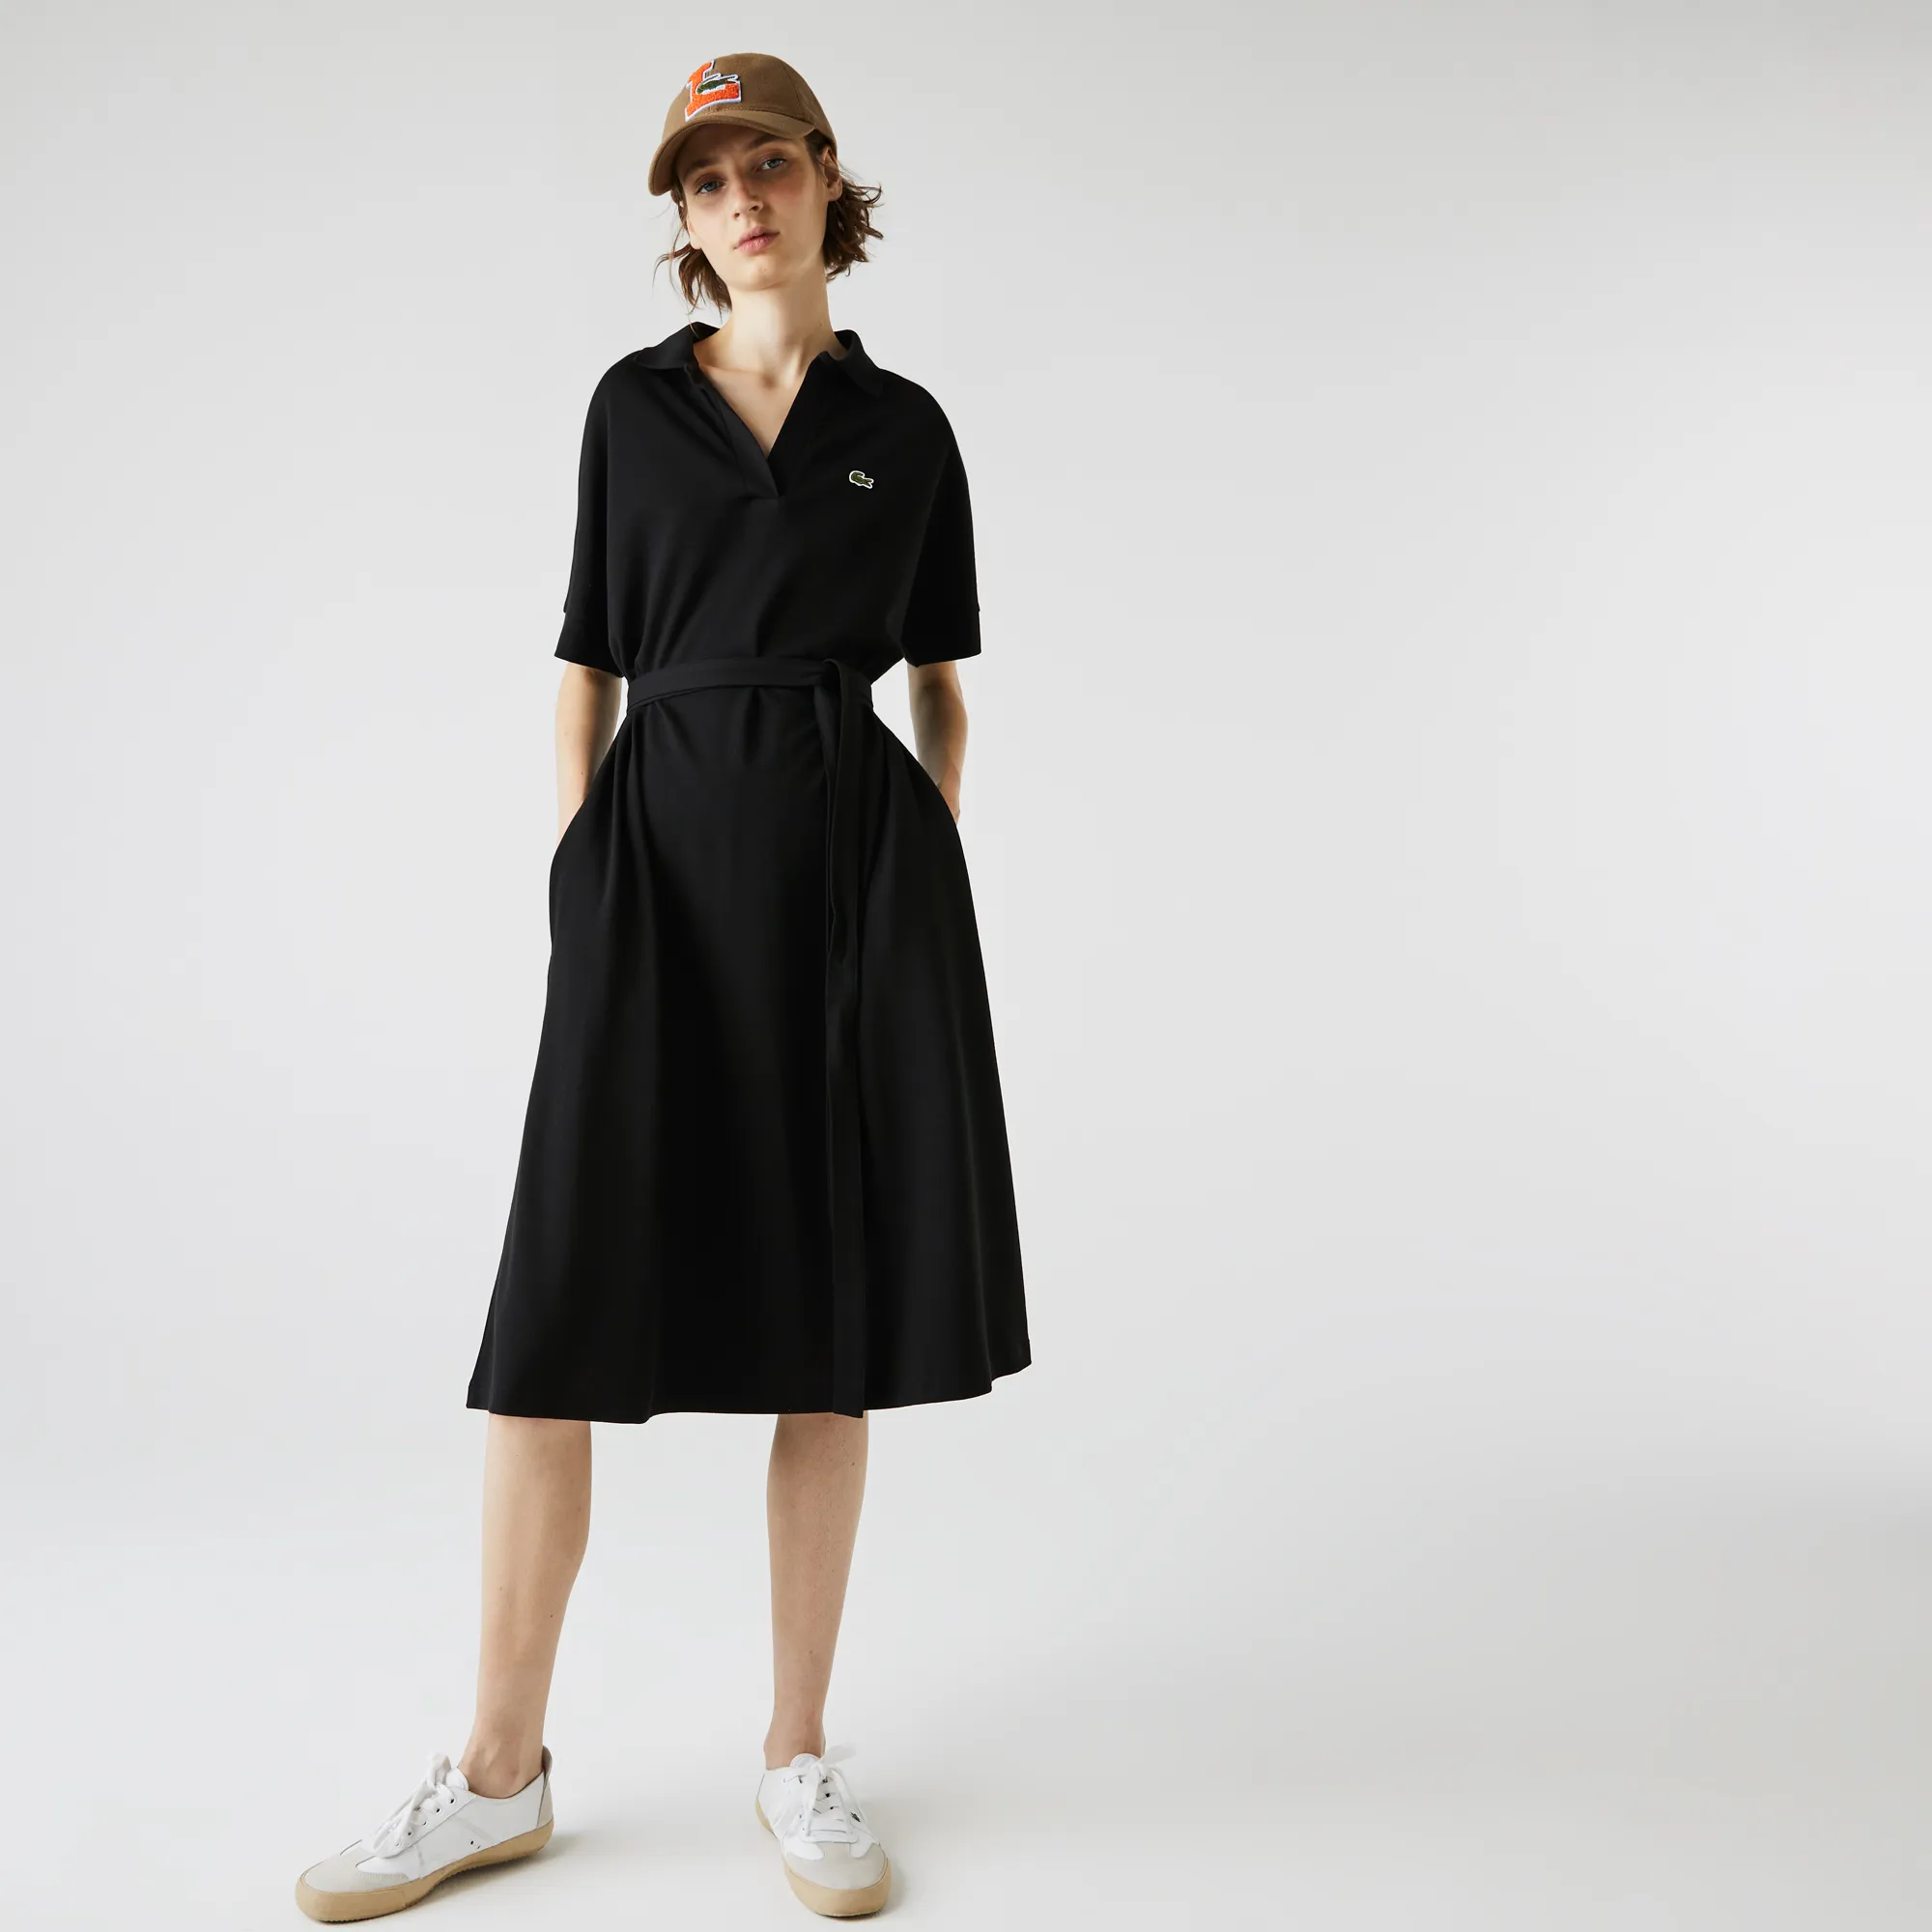 Women’s Loose Fit V-neck Piqué Polo Dress